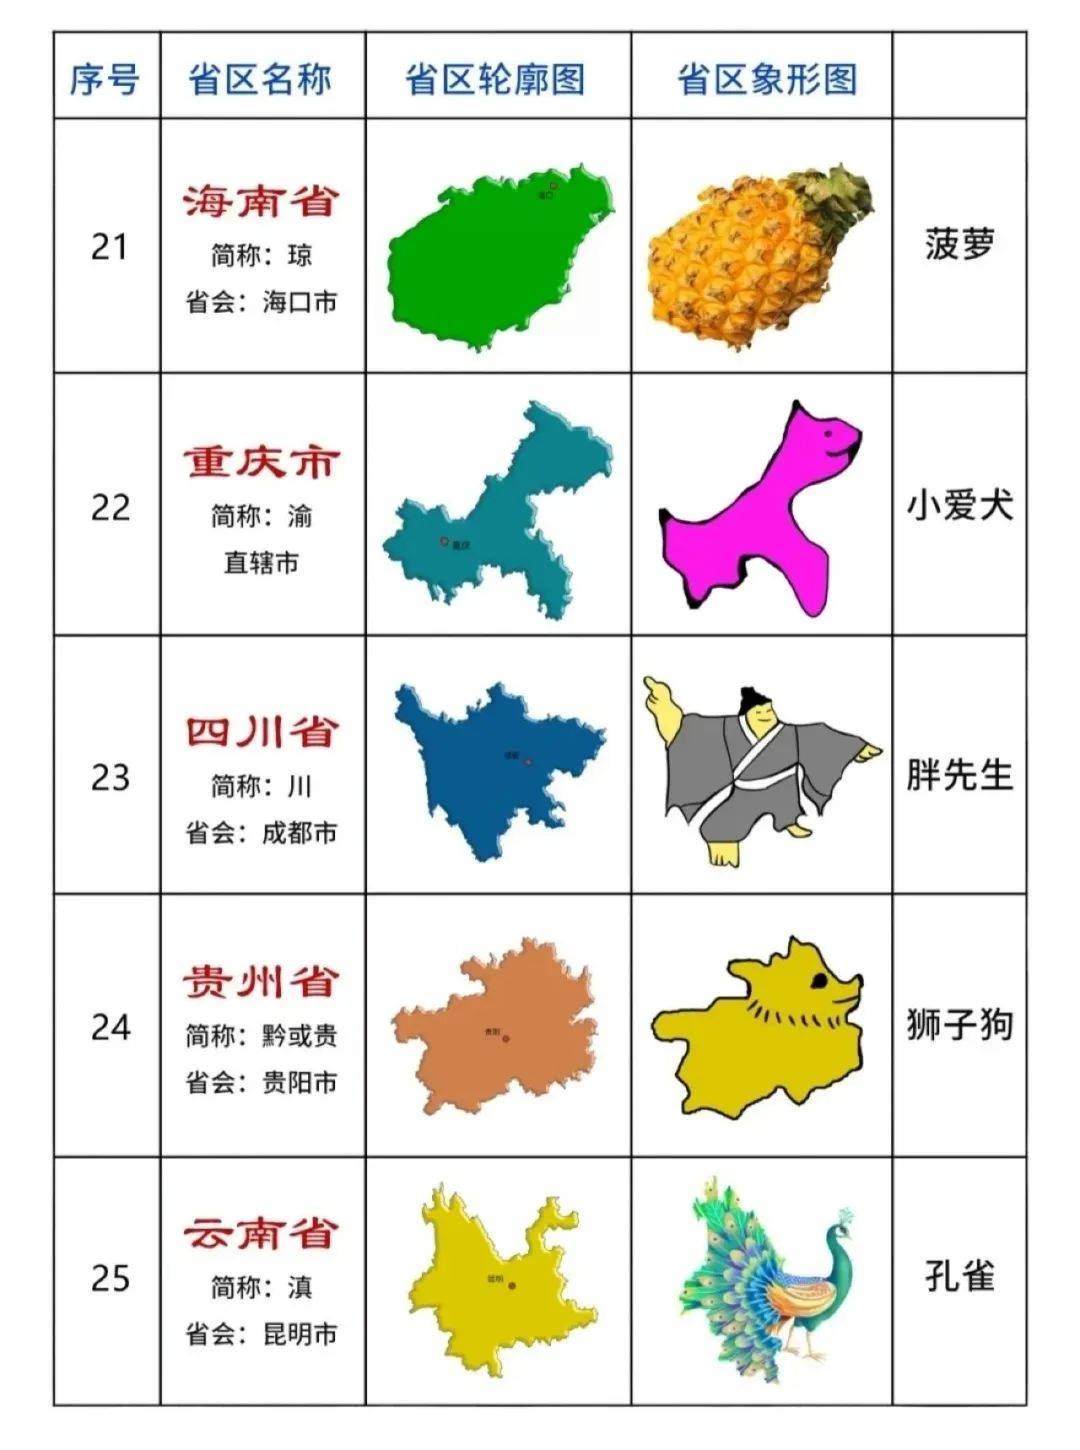 中国各省区轮廓地图——象形动物版地图